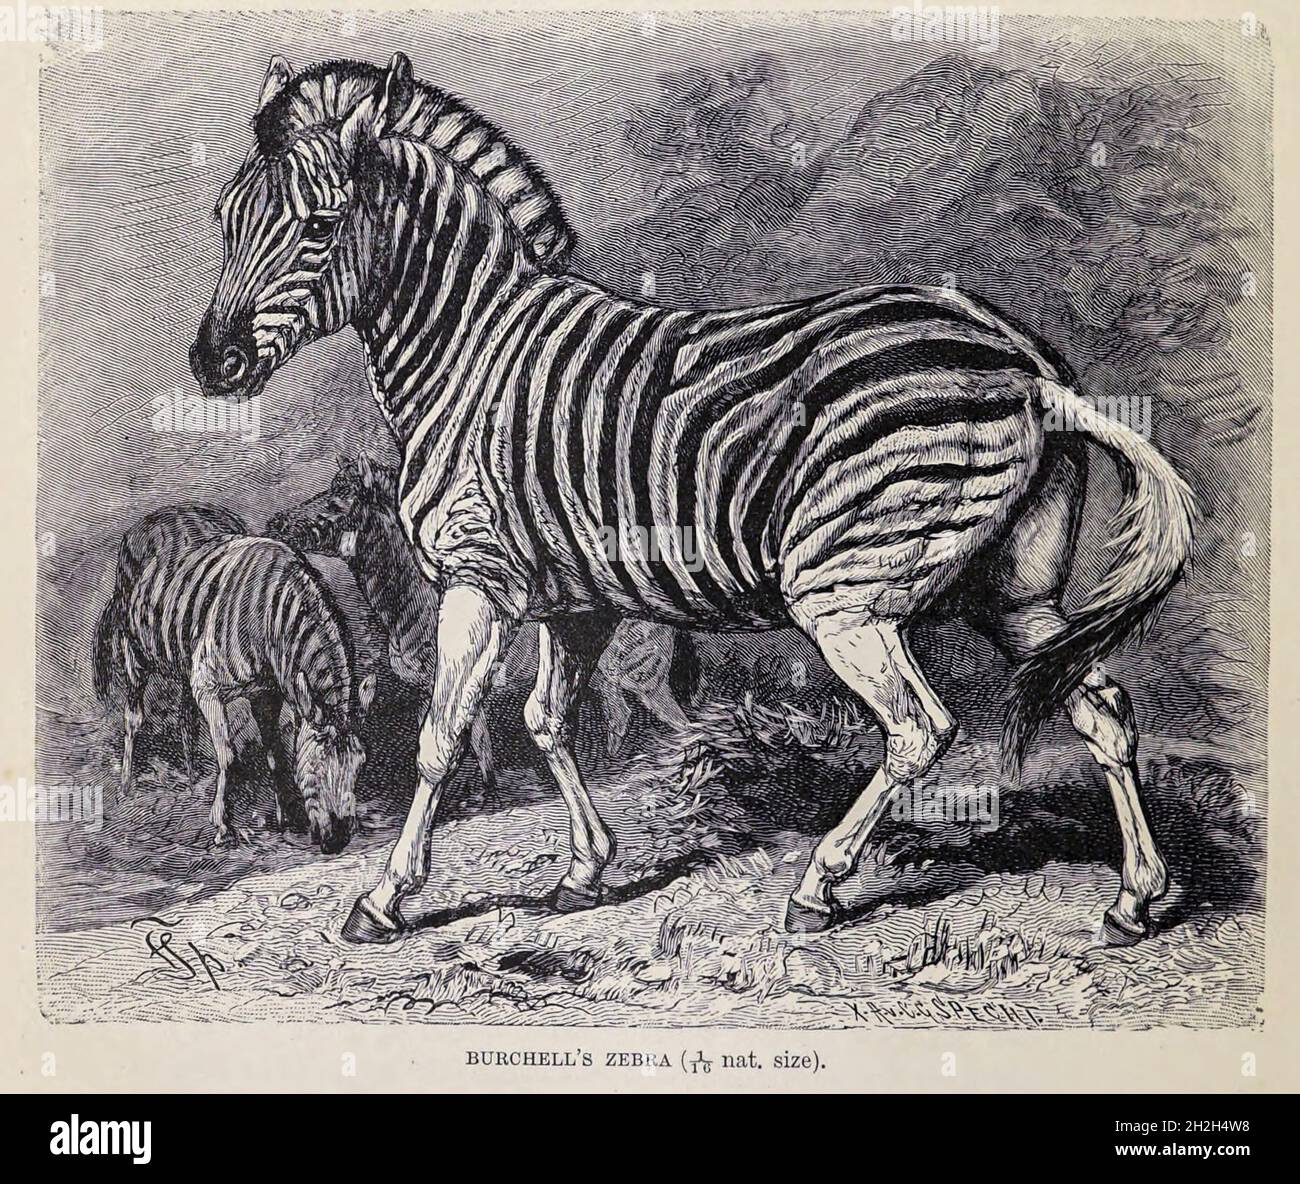 La zebra di Burchell (Equus quagga burchellii) è una sottospecie meridionale della zebra di pianura. Prende il nome dall'esploratore britannico e naturalista William John Burchell. I nomi comuni includono il bontequagga, Damaraland zebra e Zulululand zebra (Gray, 1824).[1] la zebra di Burchell è l'unica sottospecie di zebra che può essere legalmente coltivata per il consumo umano. Dal libro " Royal Natural History " Volume 2 a cura di Richard Lydekker, pubblicato a Londra da Frederick Warne & Co nel 1893-1894 Foto Stock